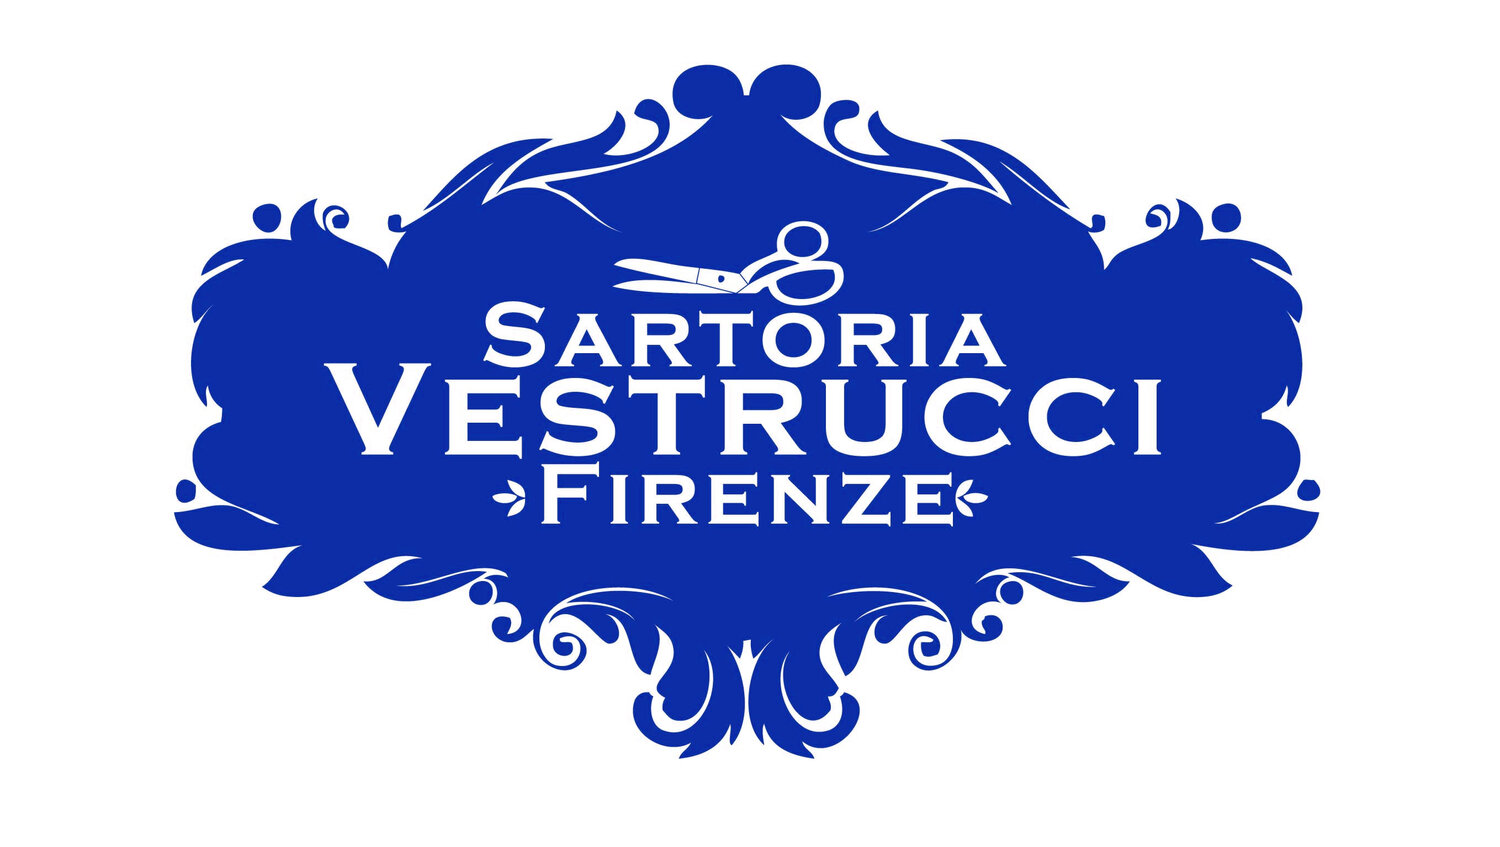 Sartoria Vestrucci